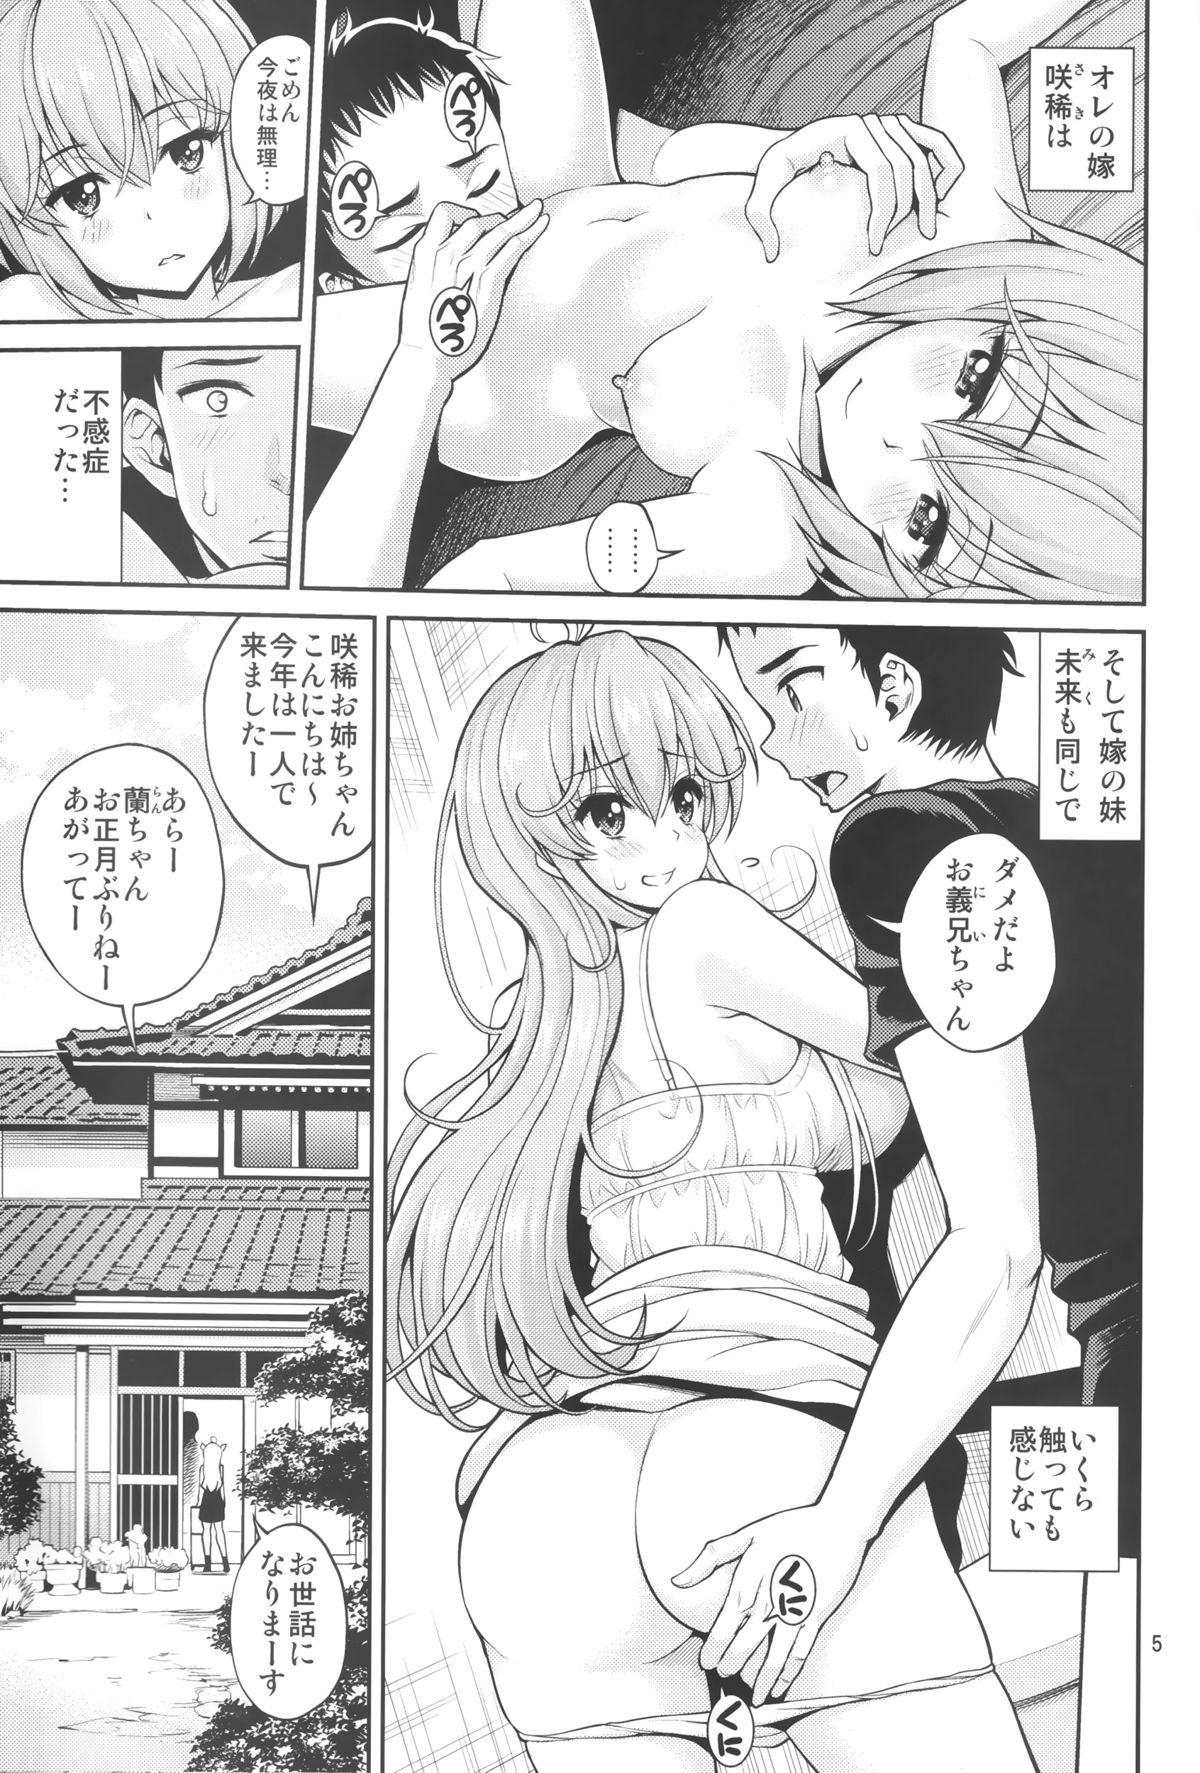 Load Hatsujou Switch Shinseki Chuugakusei Uncut - Page 4